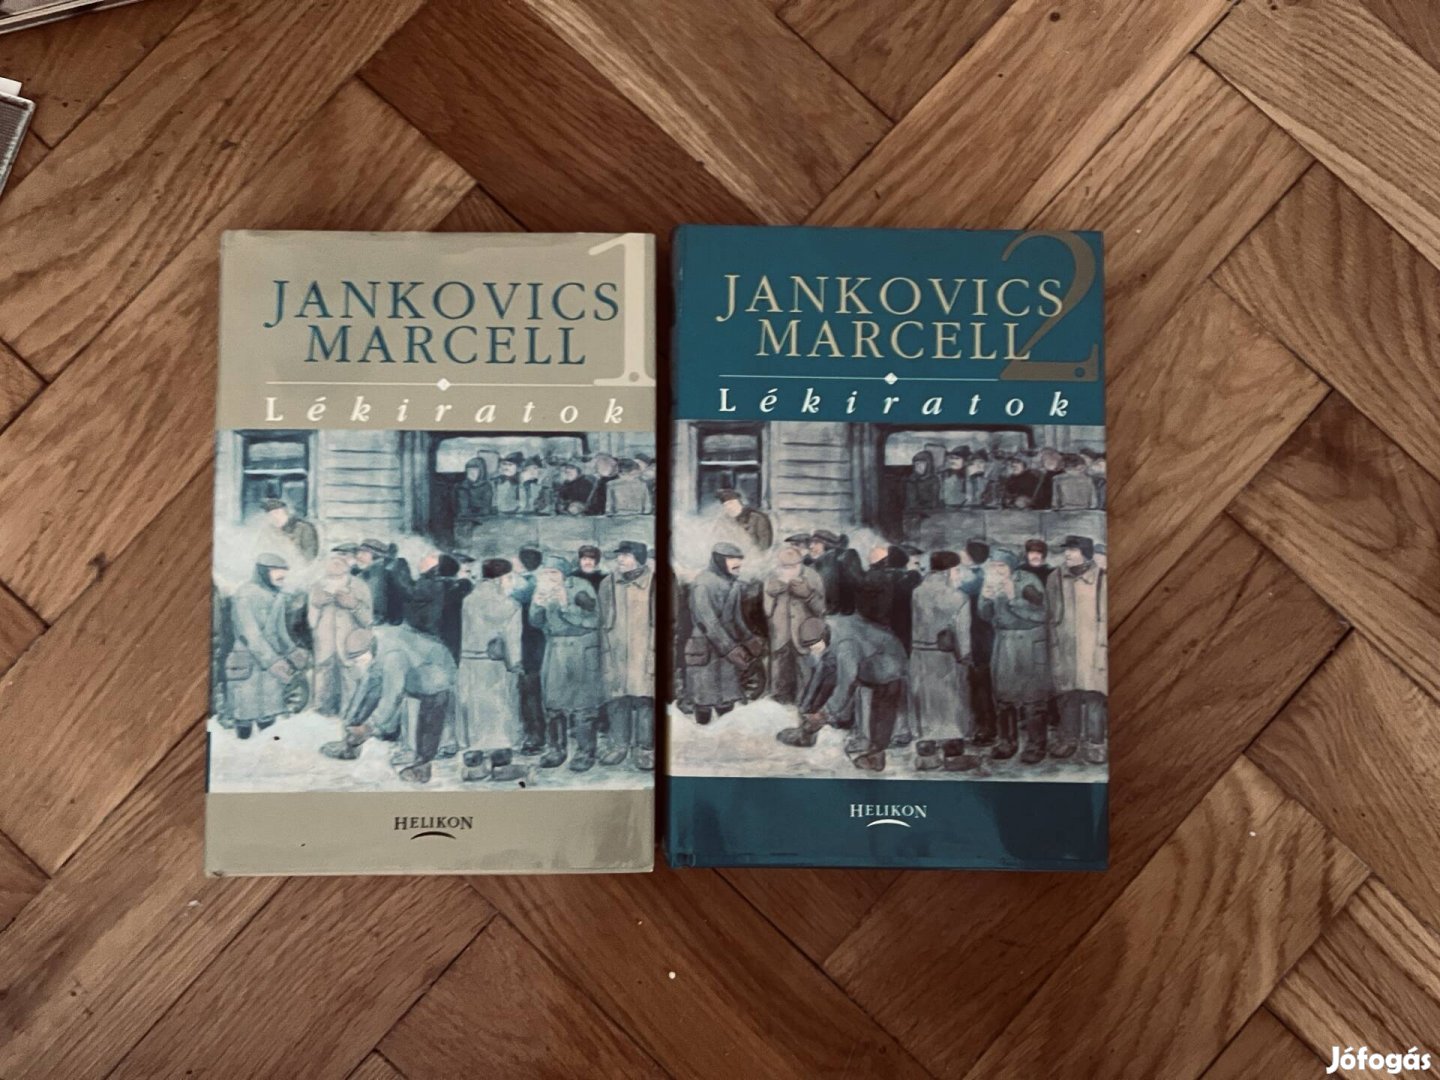 Janlovics Marcell Lékiratok I és II kötet